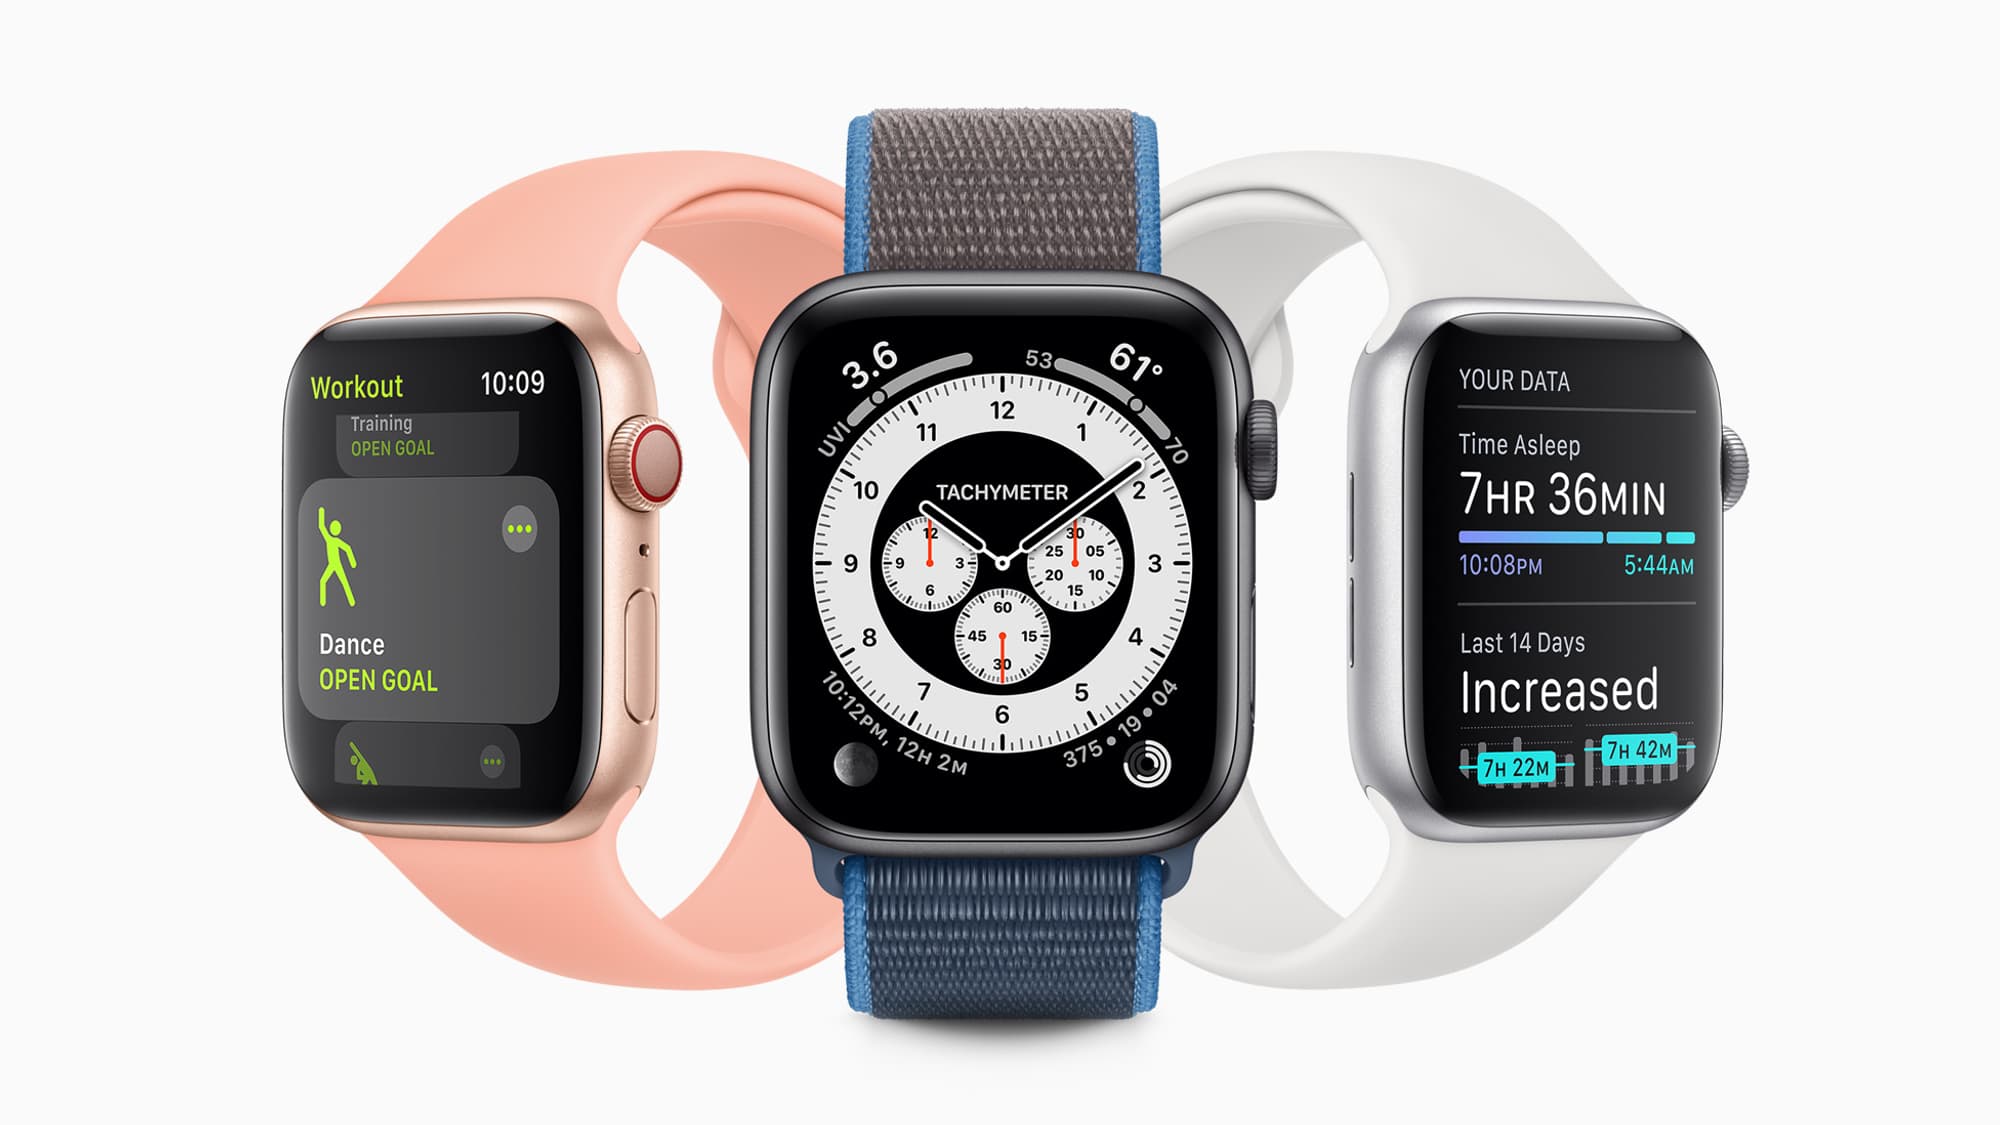 Apple présente l'Apple Watch Series 6, capable de mesurer le taux d'oxygène  dans le sang